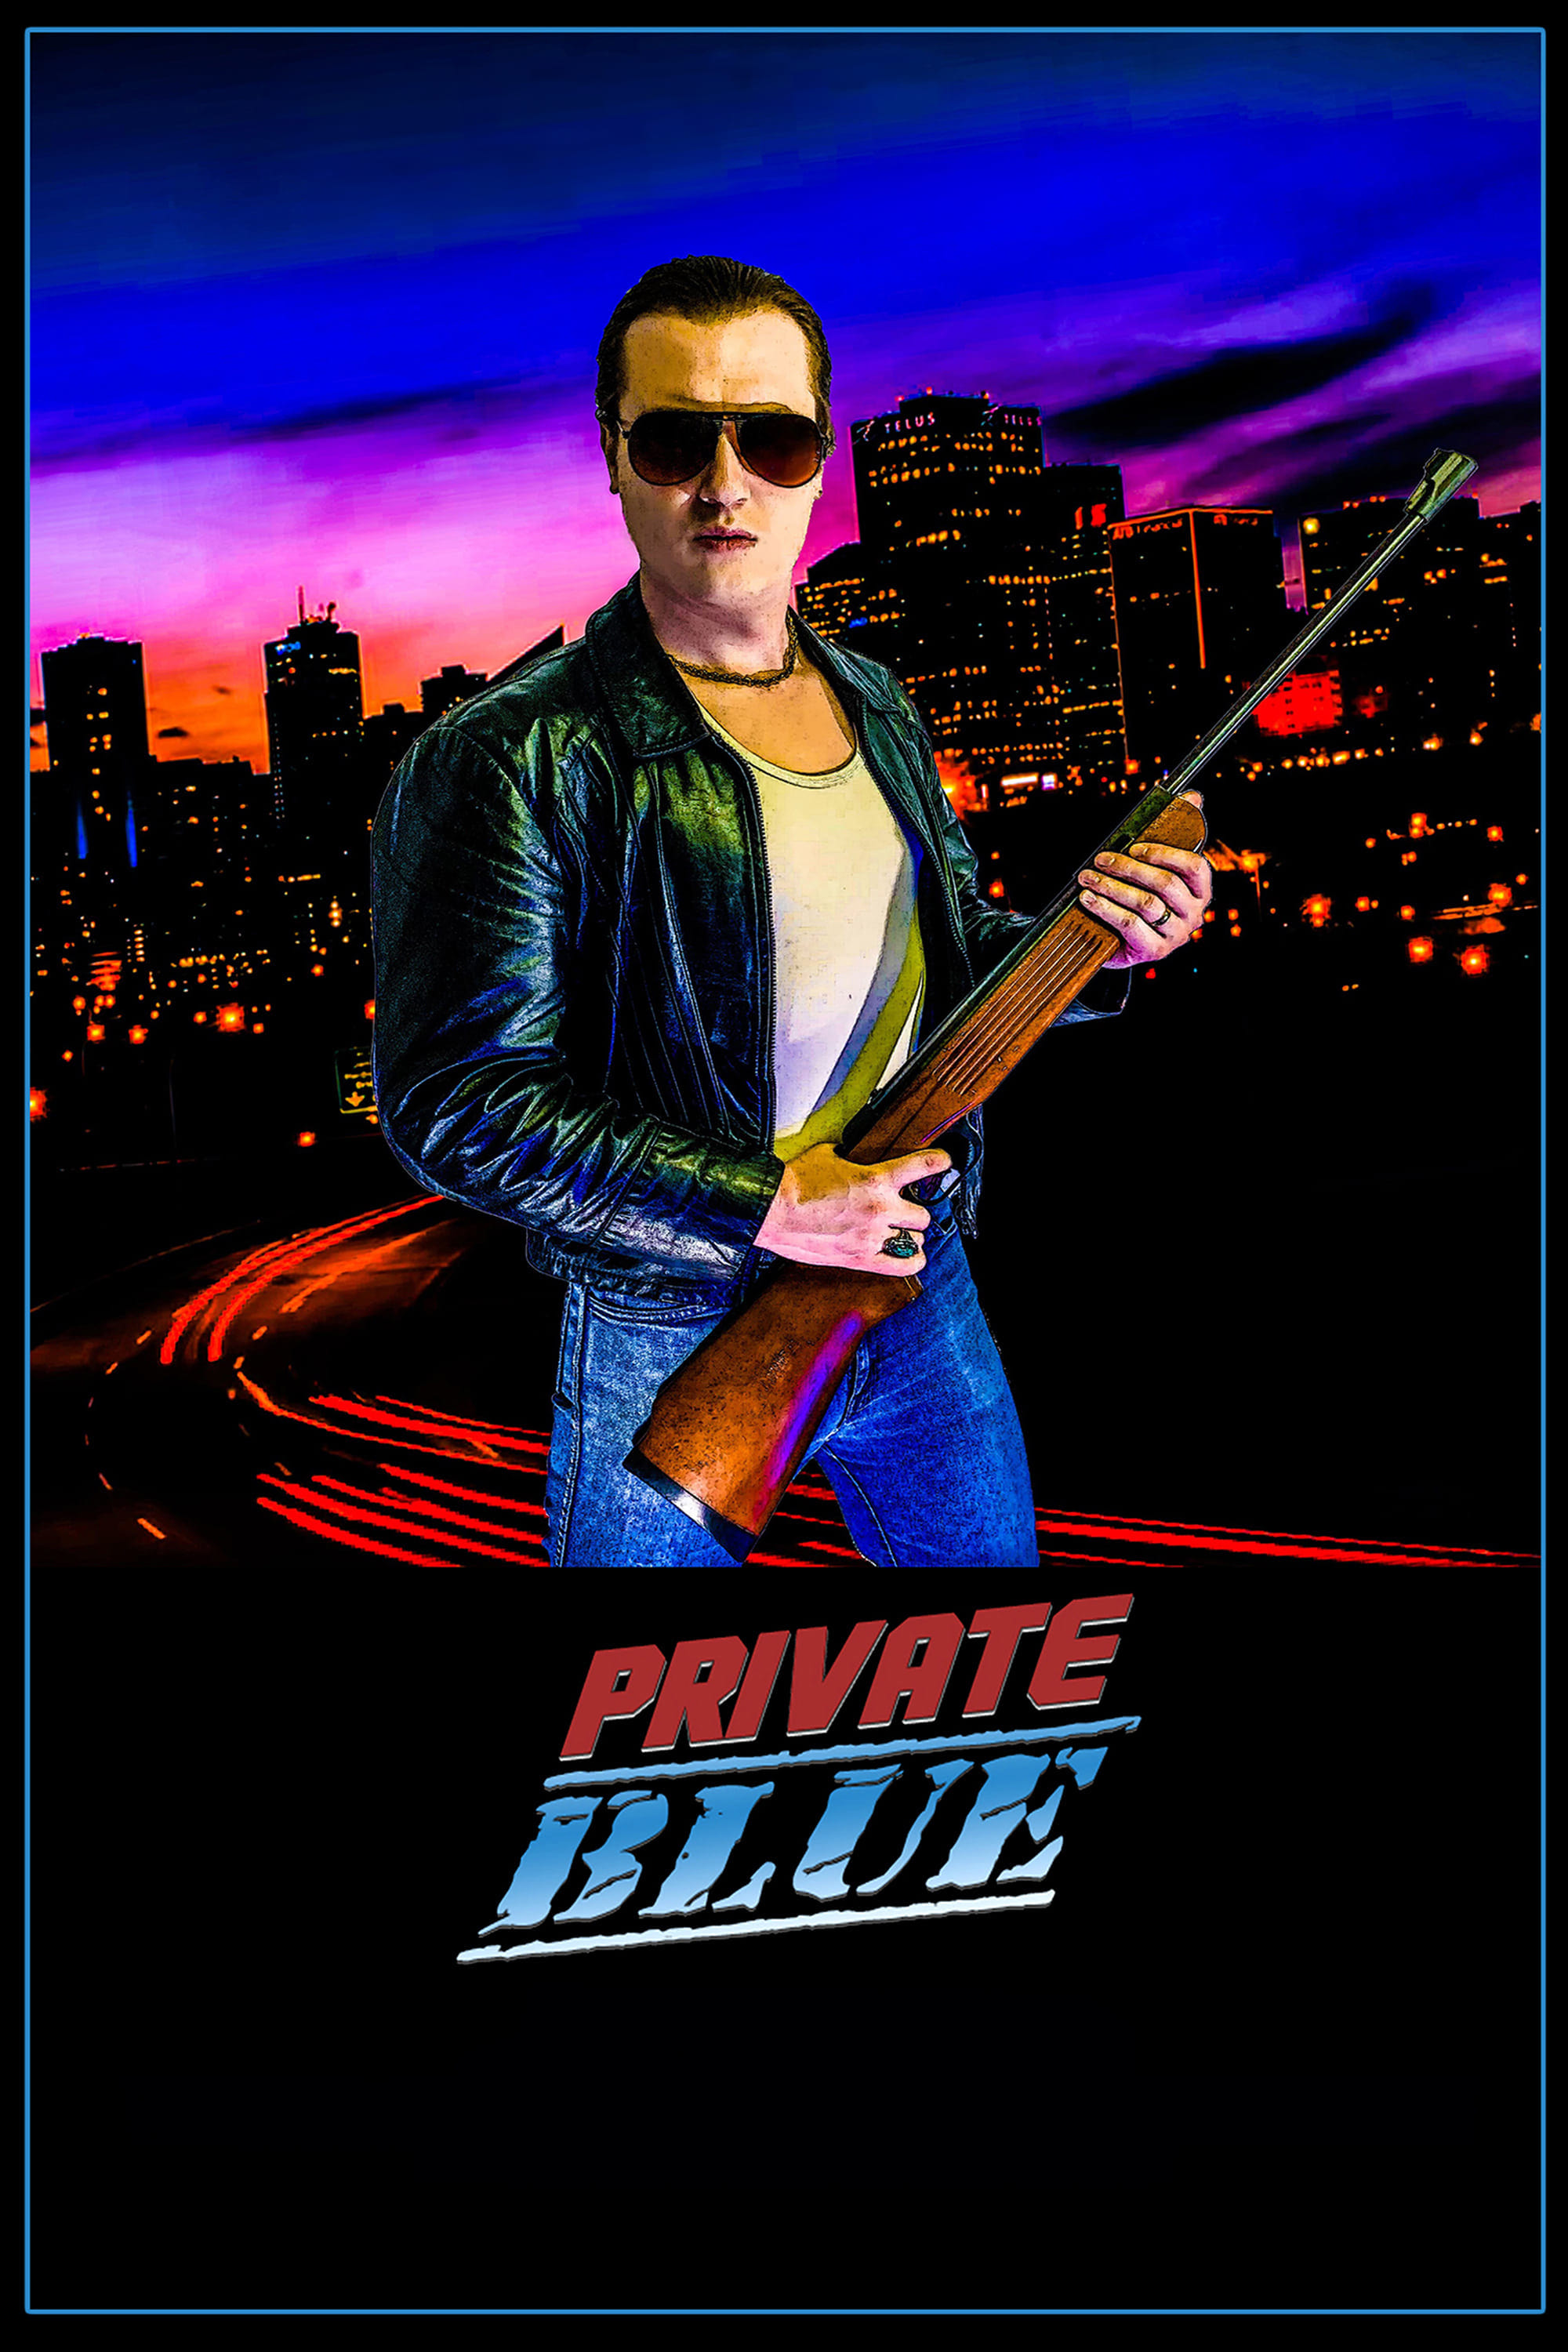 Private Blue